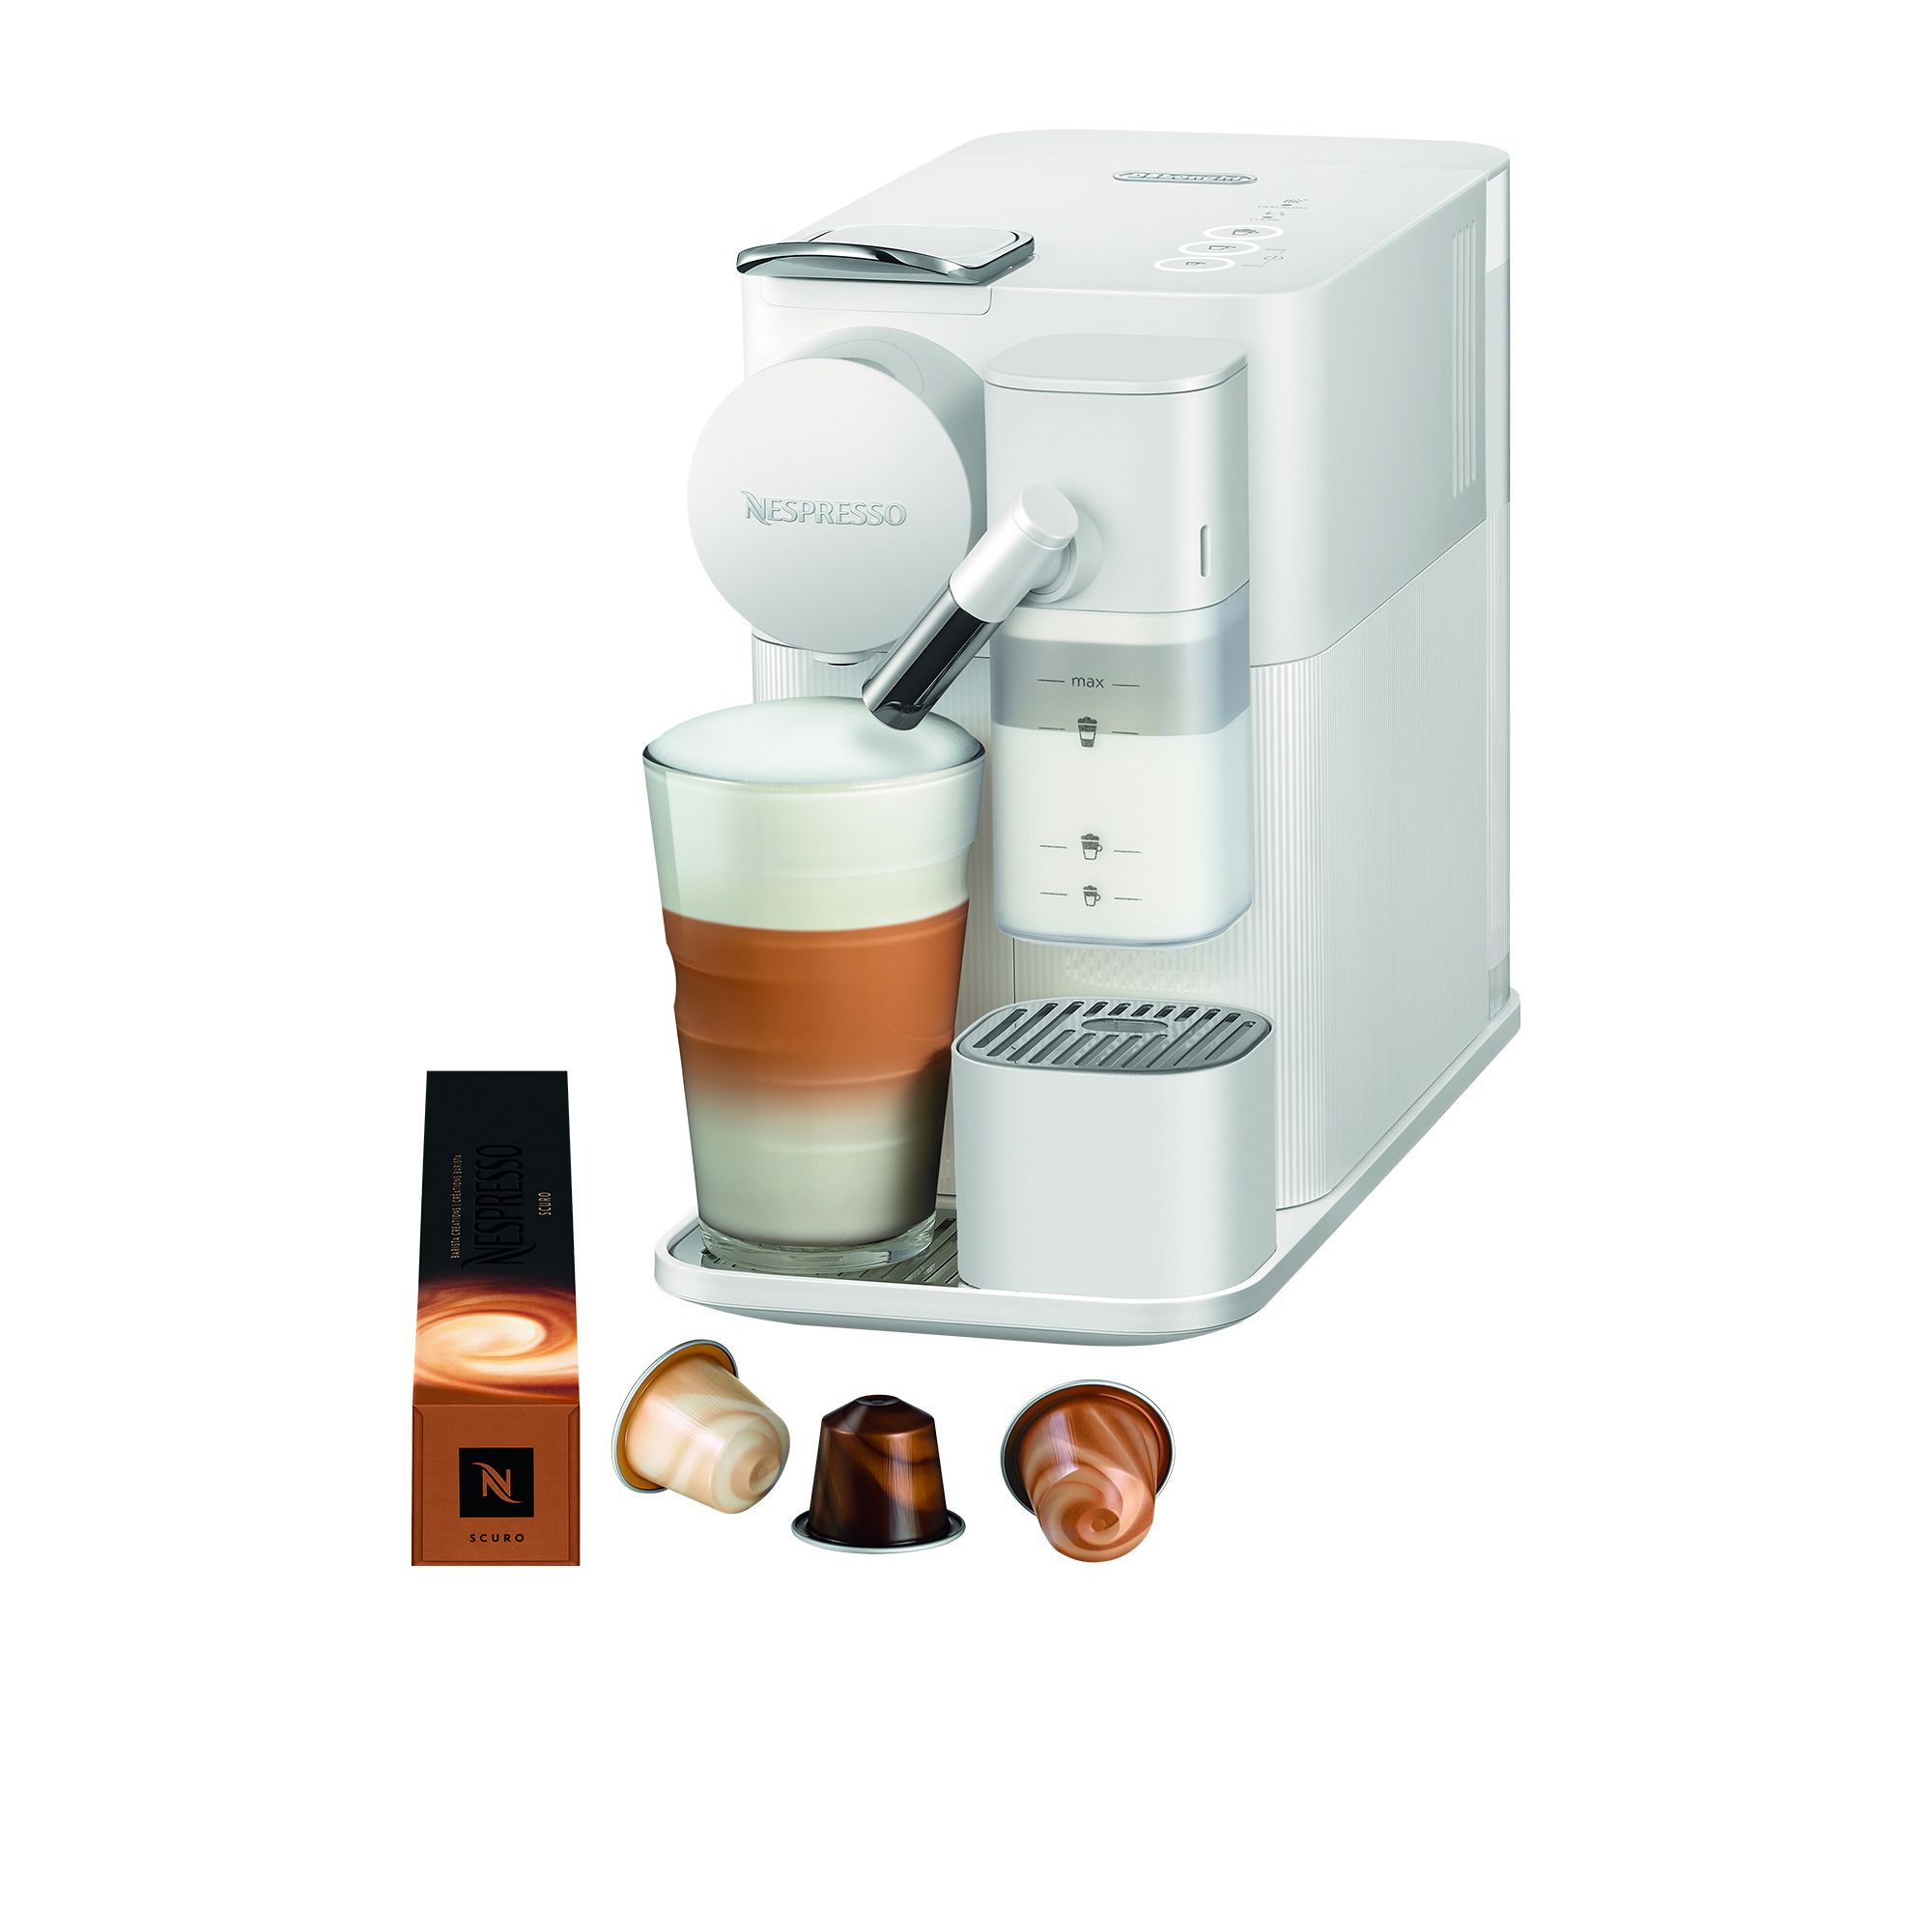 DeLonghi Nespresso Lattissima One EN510W Coffee Machine White Image 1